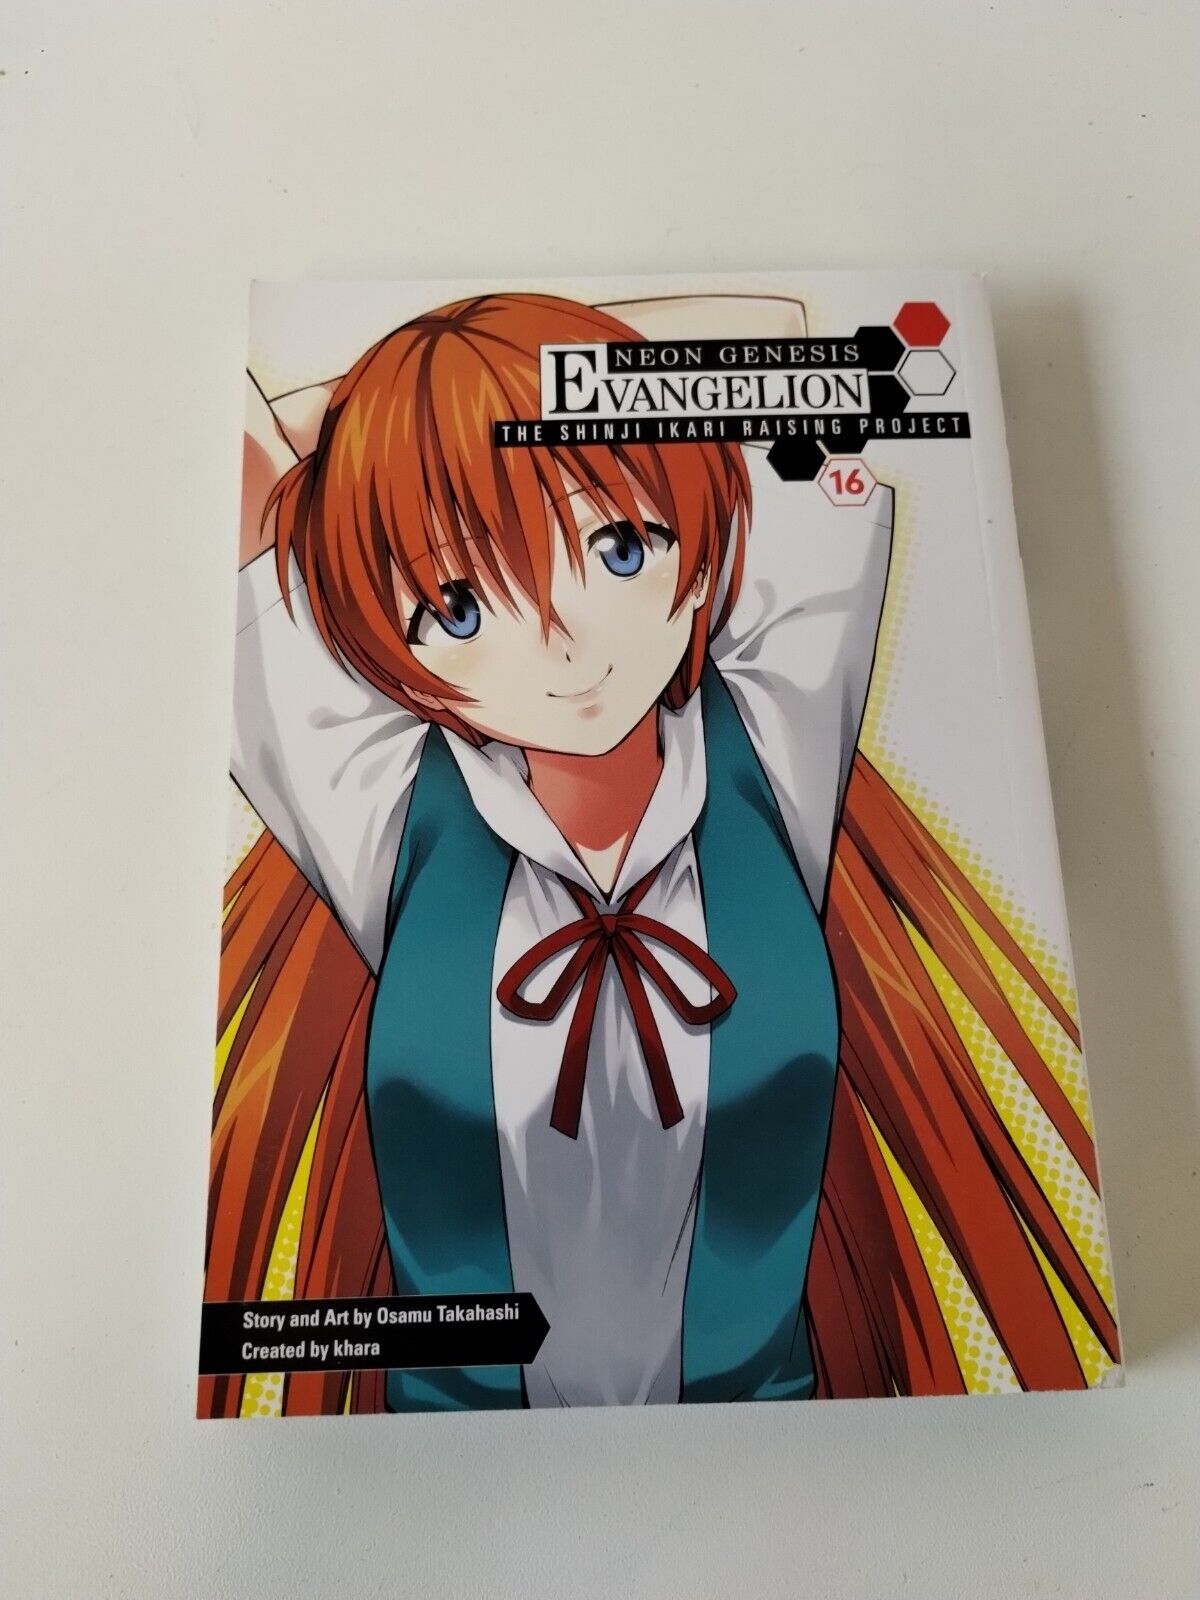 Neon Genesis Evangelion Shinji Ikari Raising Project Manga Volume 16